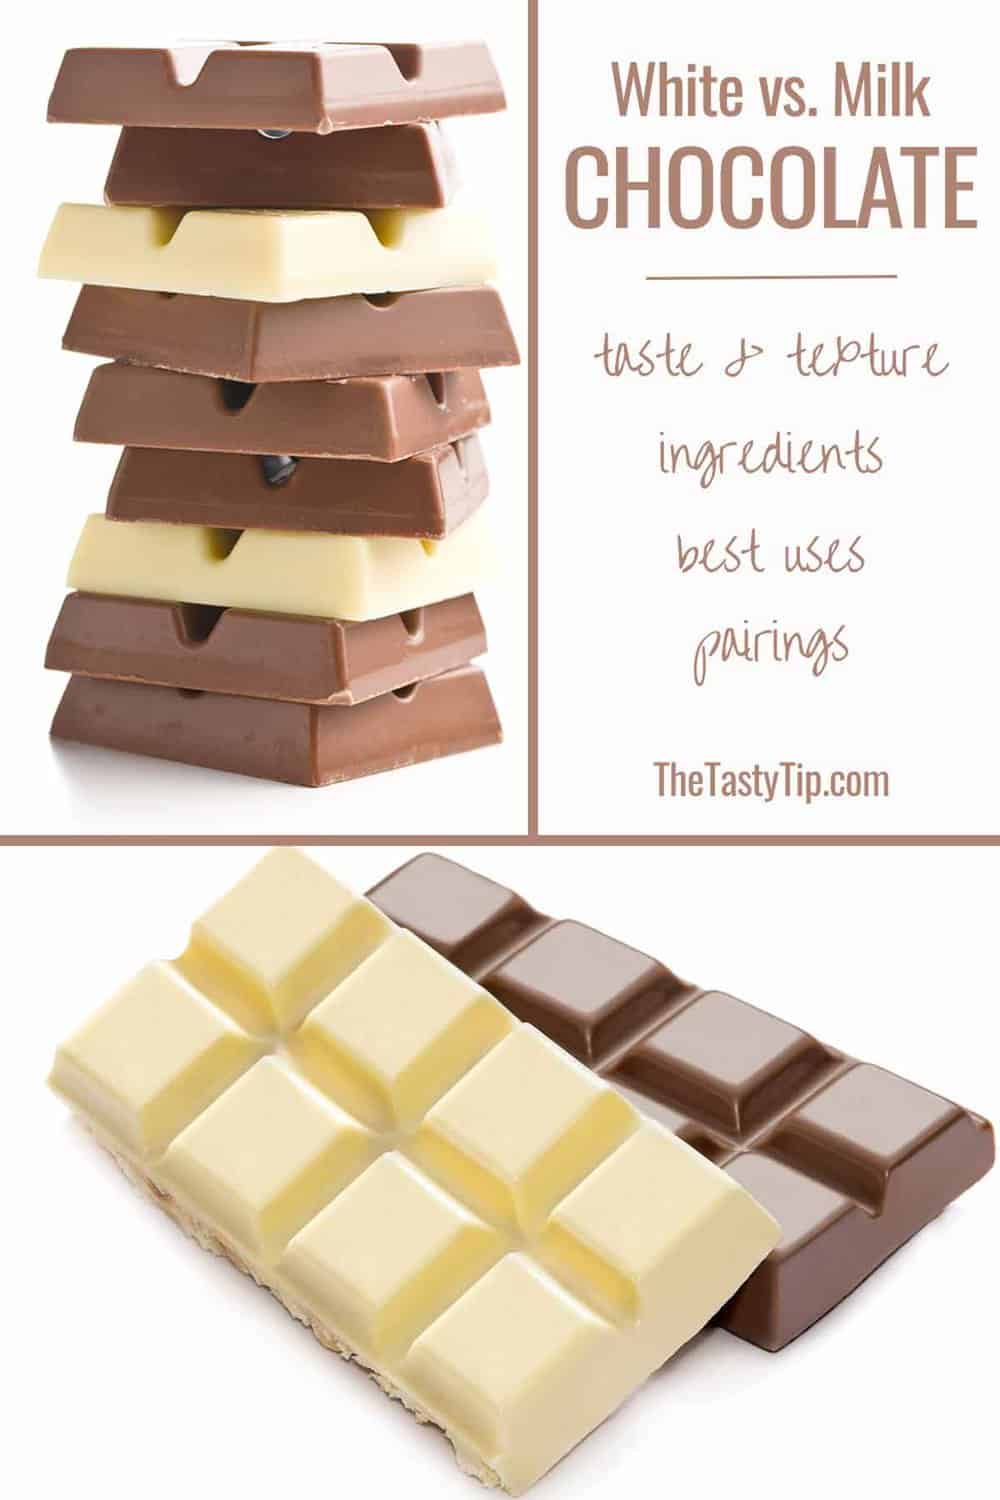 white chocolate vs milk chocolate stacks